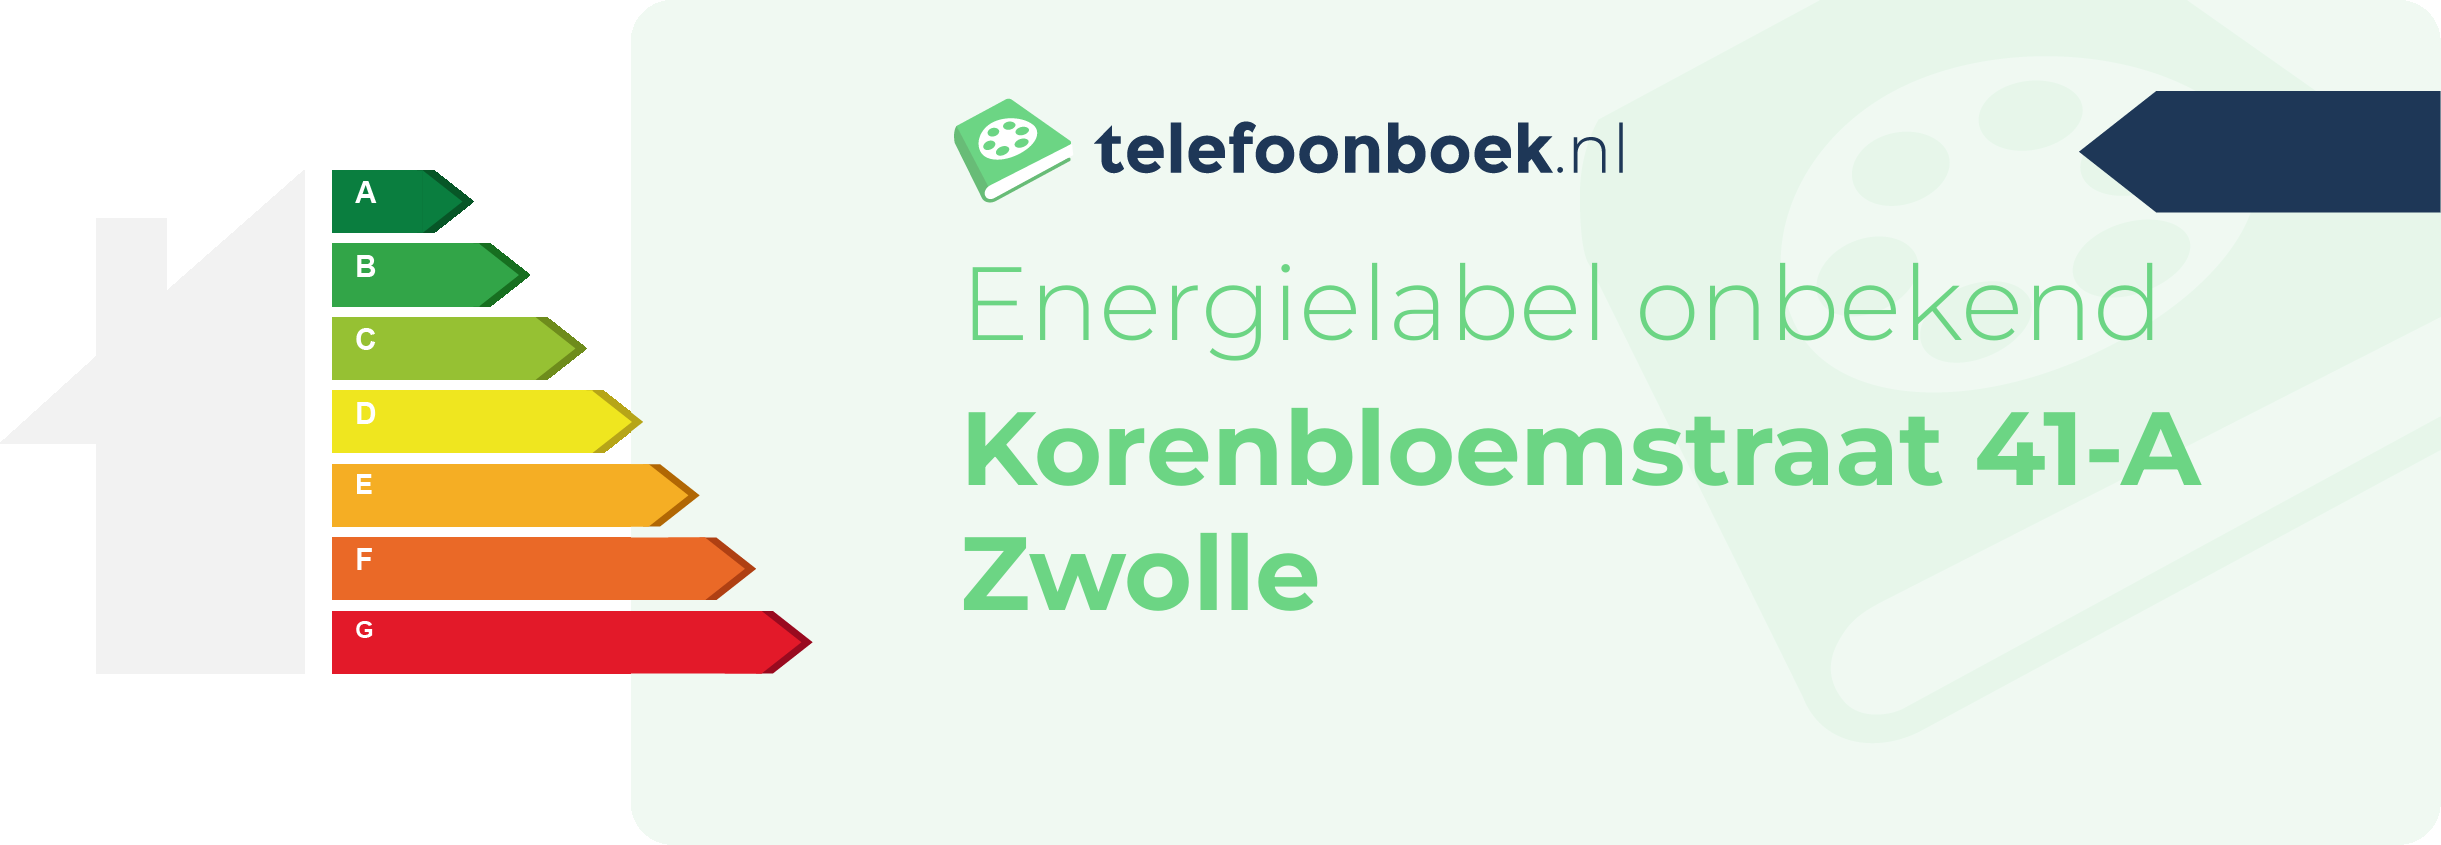 Energielabel Korenbloemstraat 41-A Zwolle